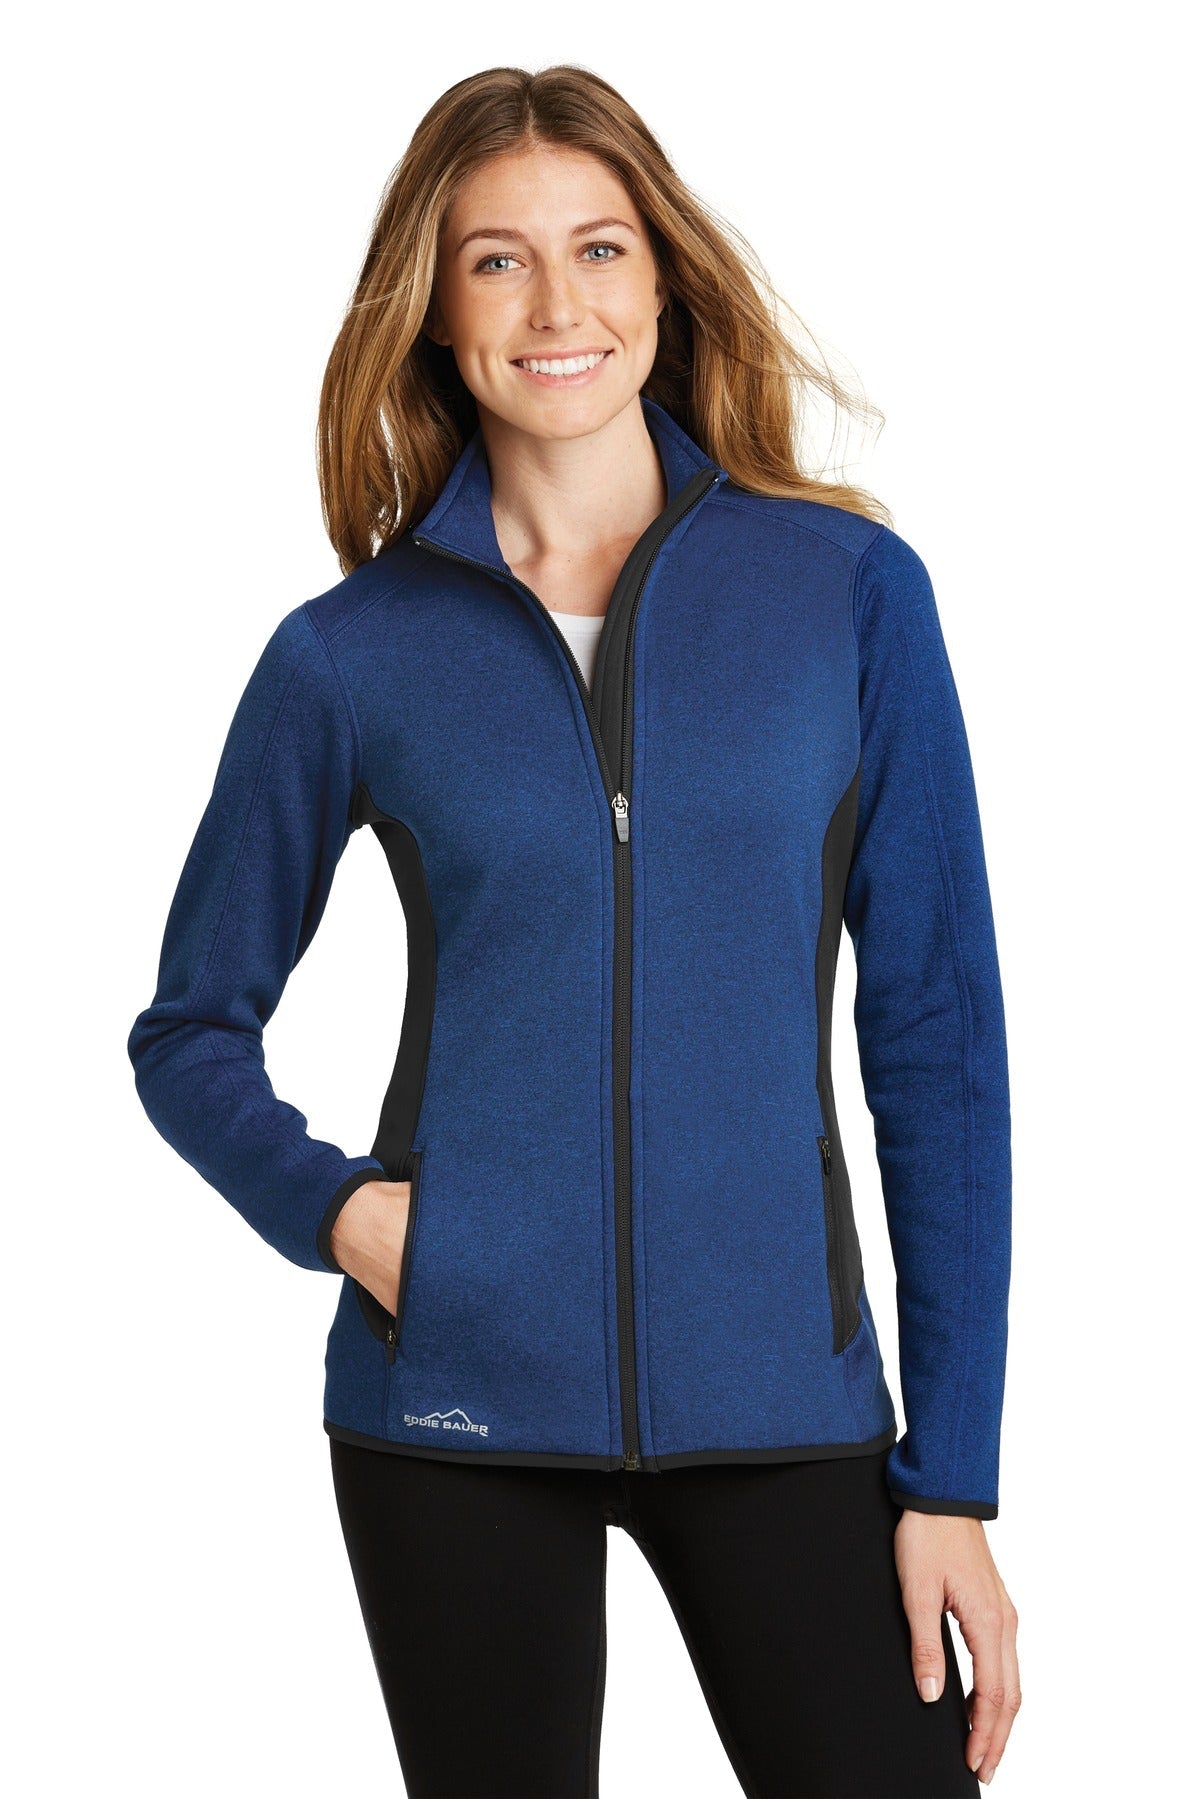 Eddie Bauer® Ladies Full-Zip Heather Stretch Fleece Jacket. EB239 - DFW Impression